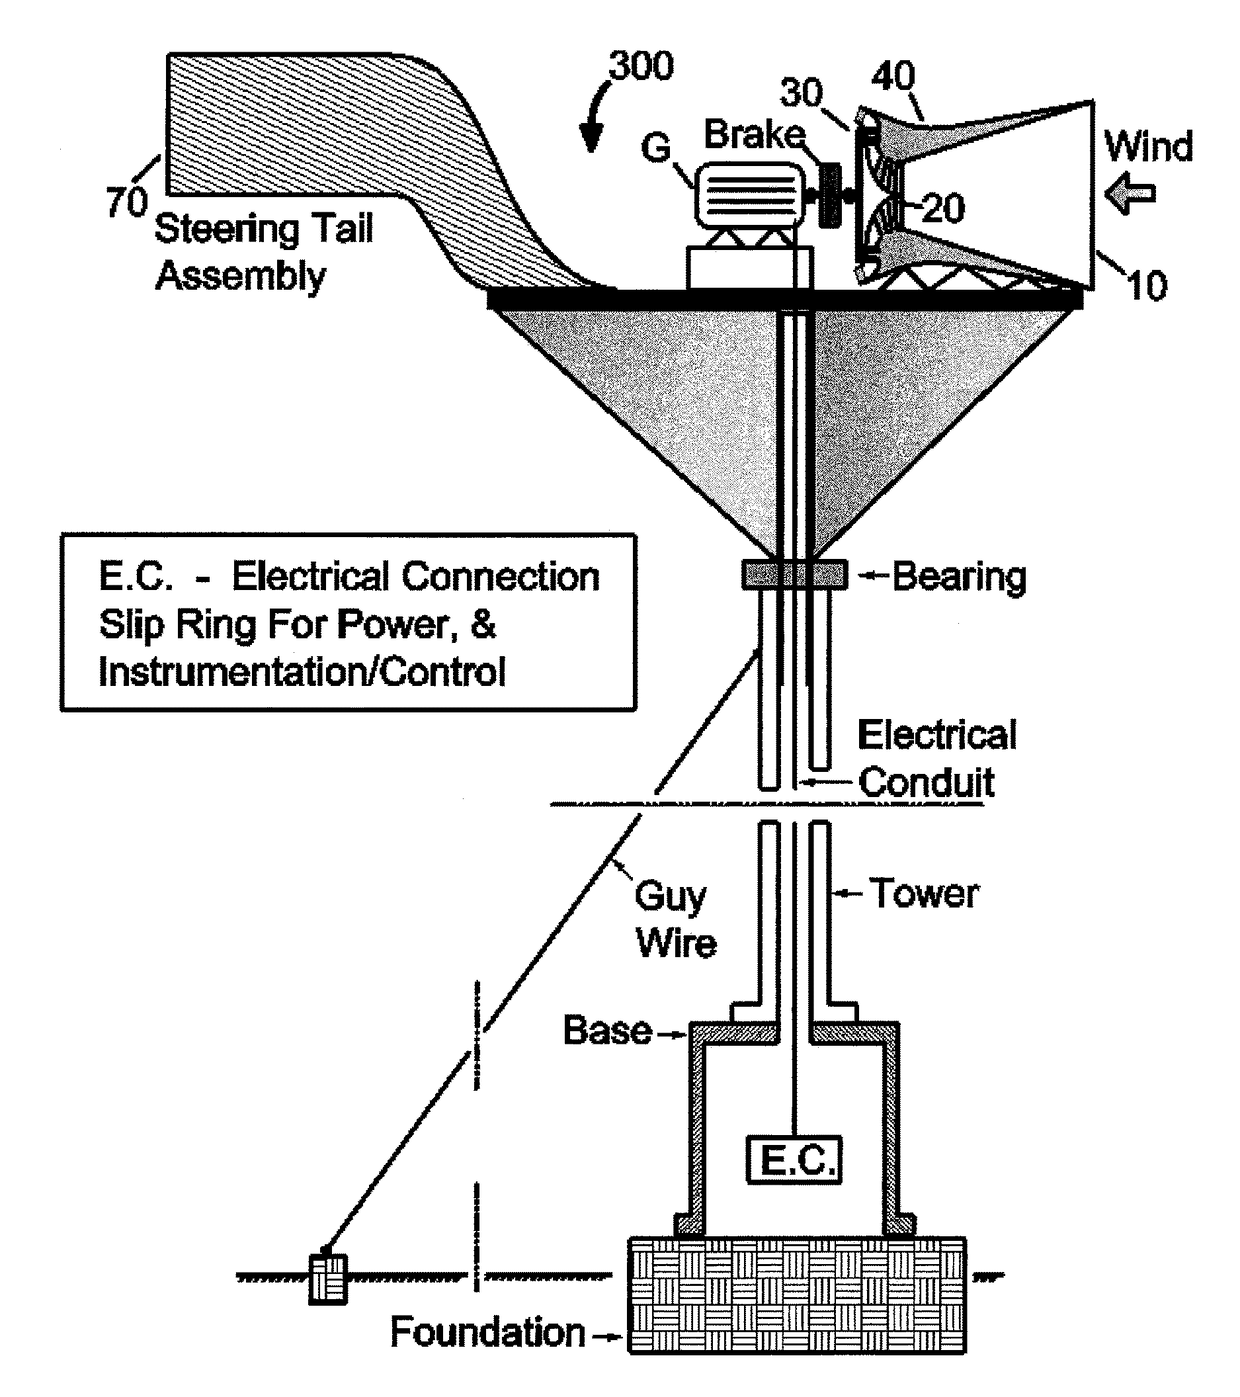 Multi-stage radial flow turbine